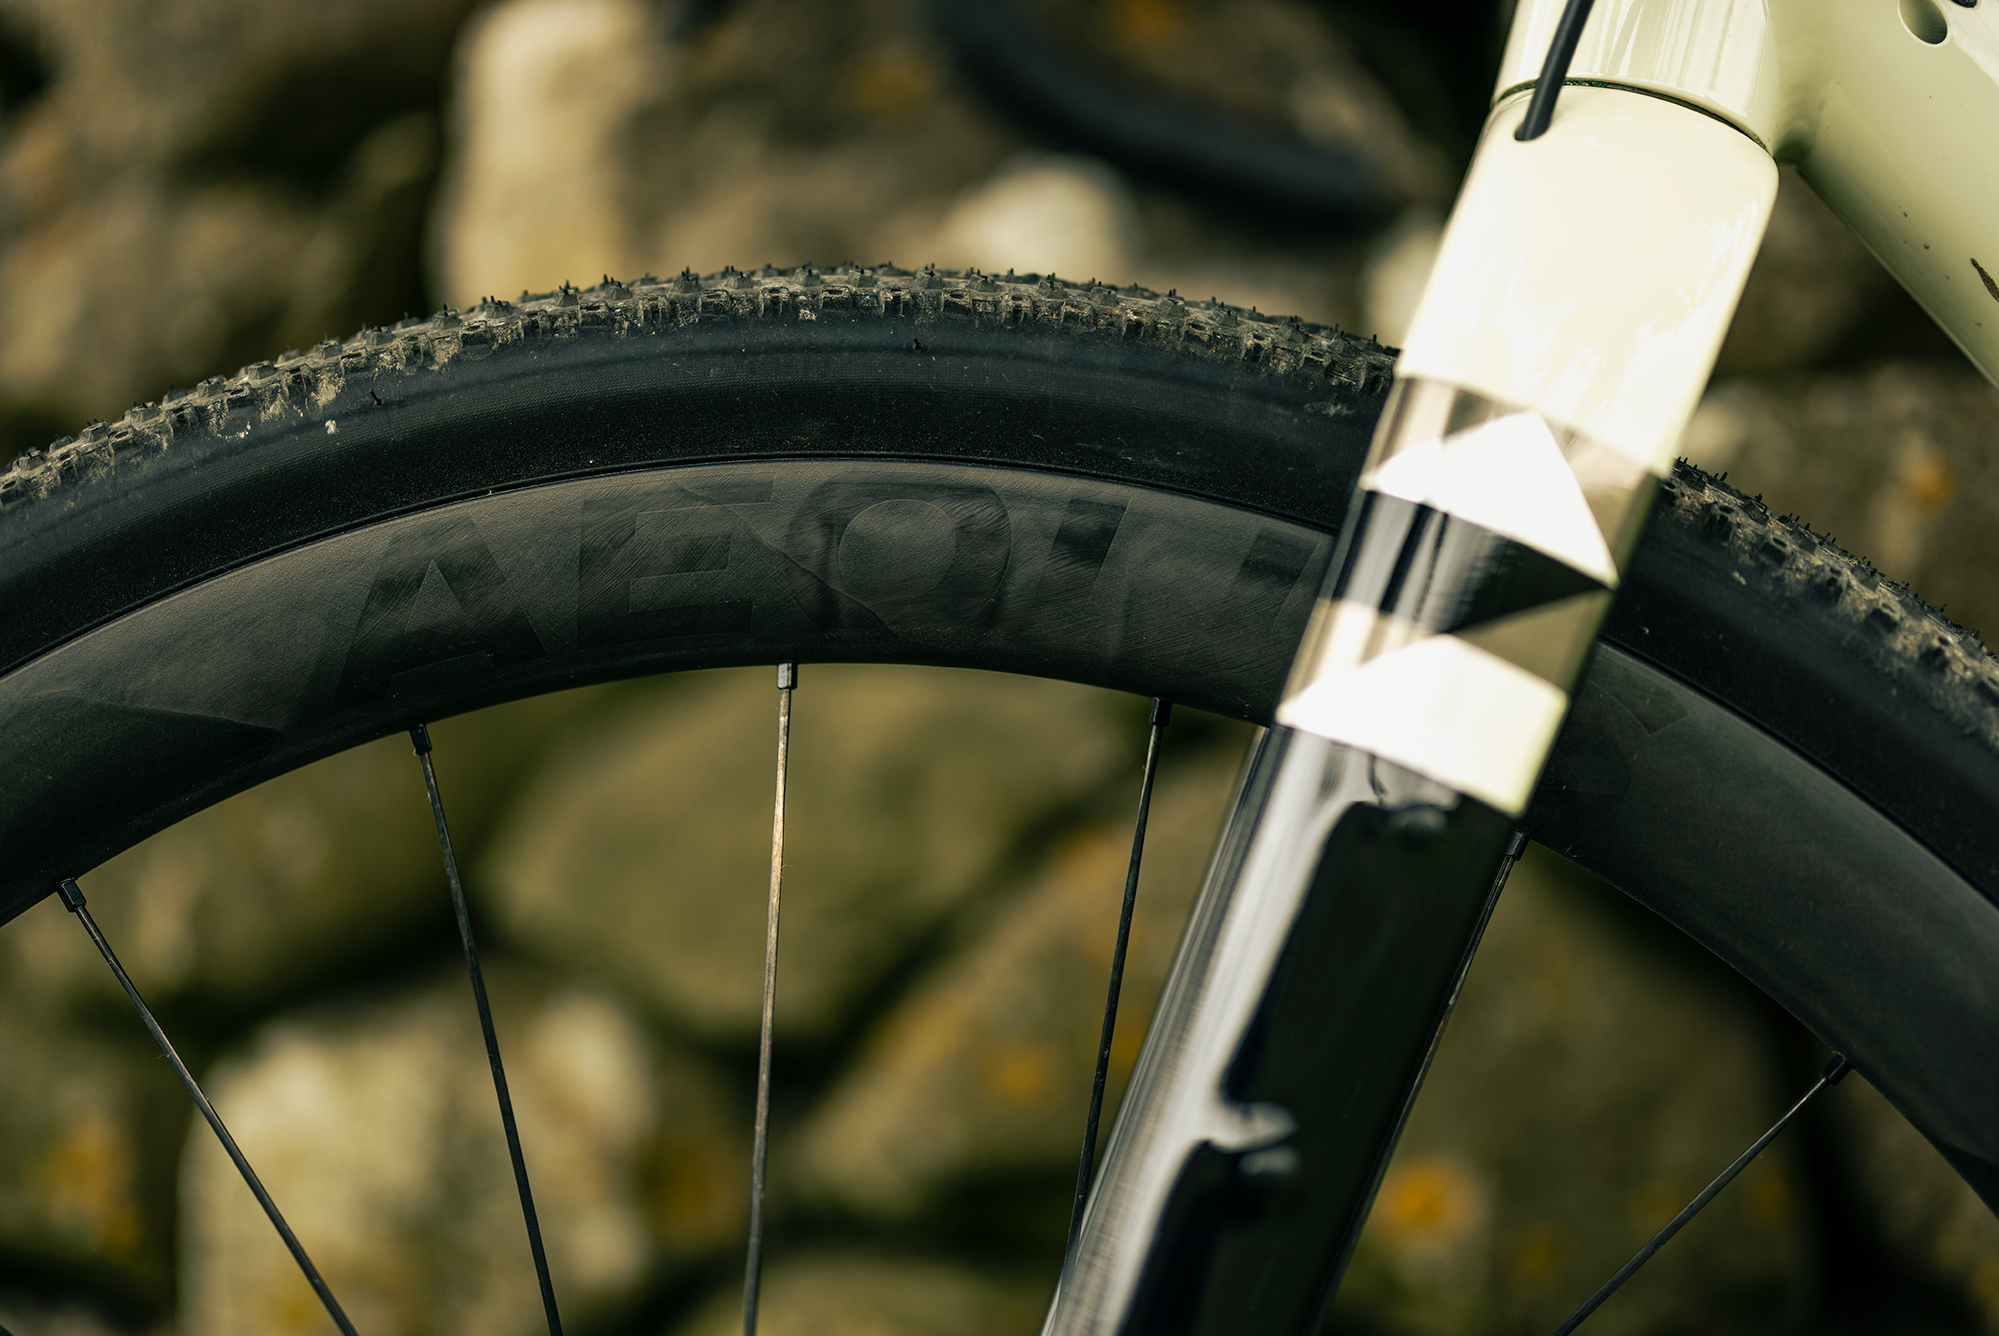 Choosing the right tire set-up for gravel biking